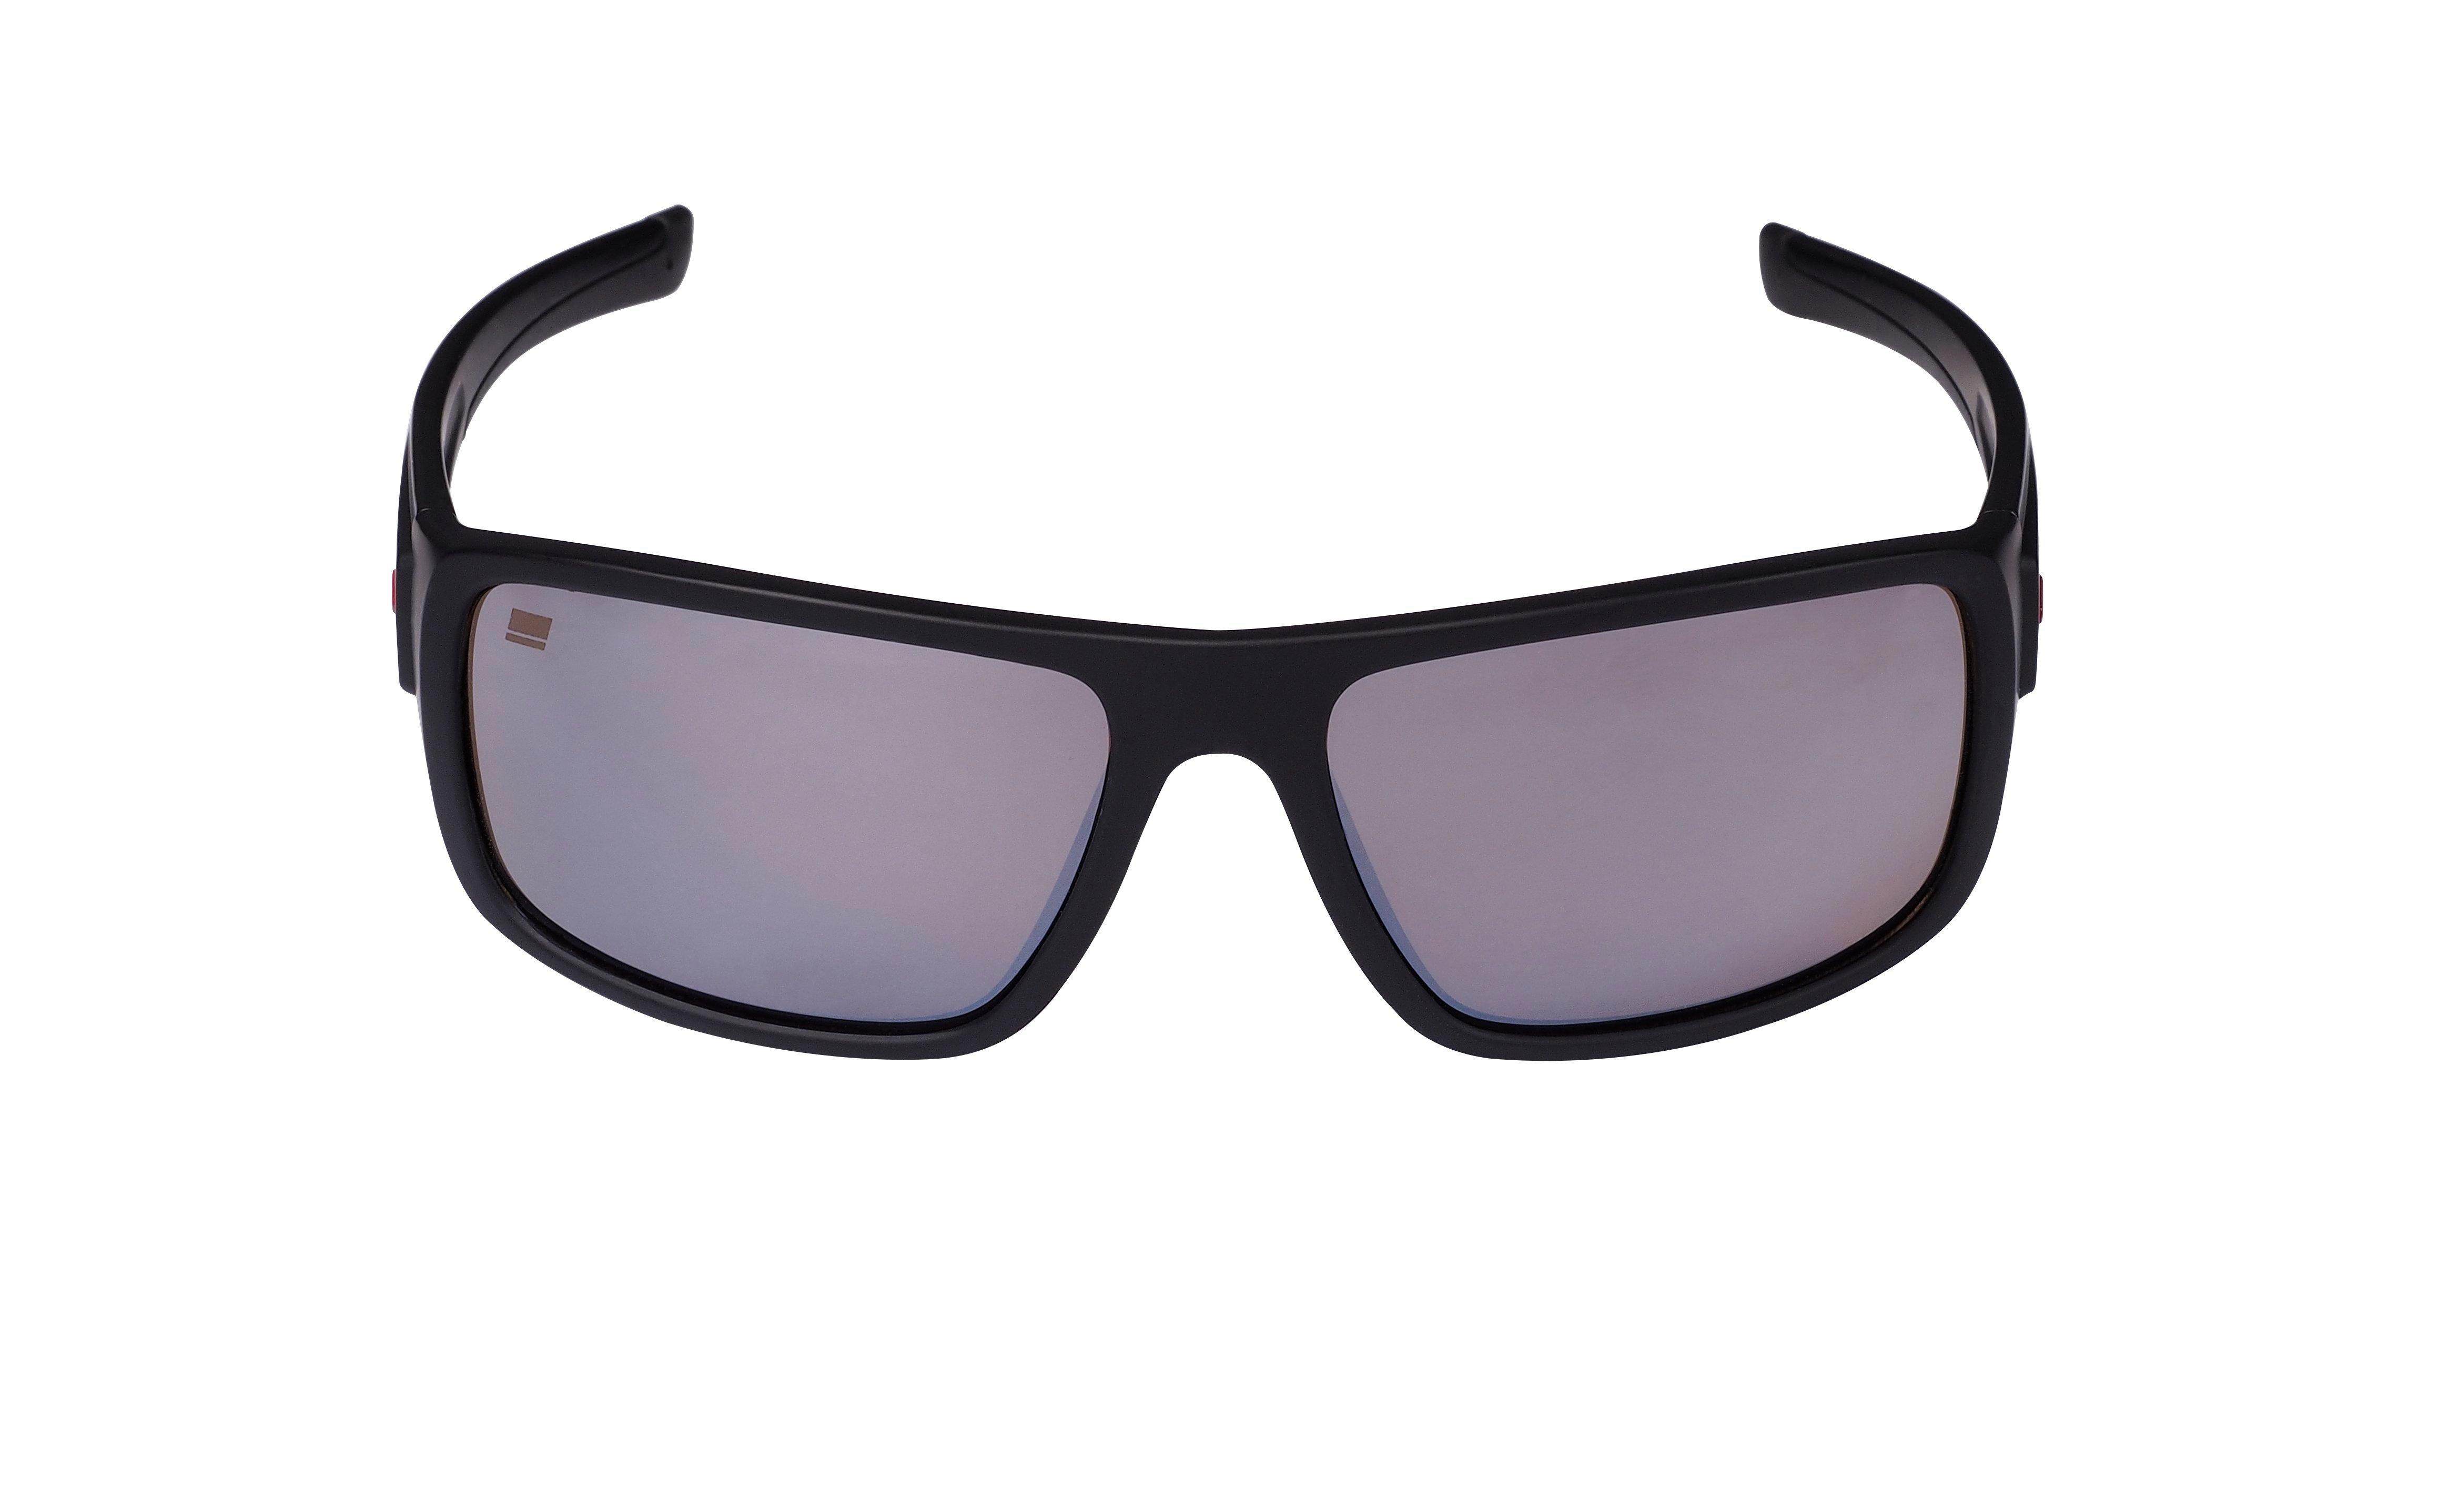 Abu Garcia Revo Eyewear Polarized Sunglasses - Silver